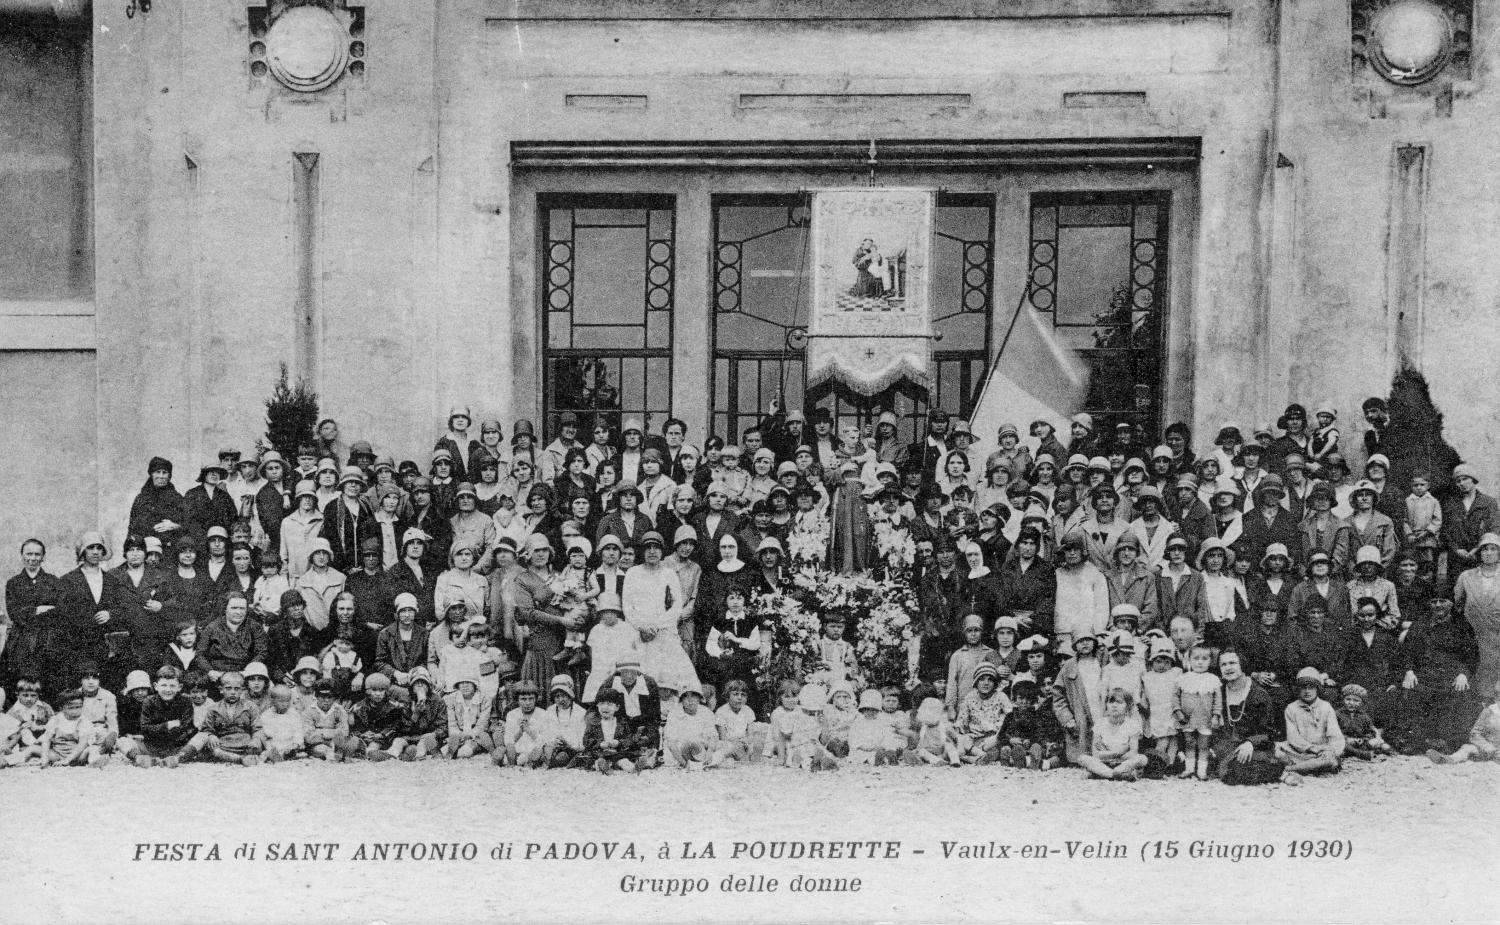 Festa di Sant Antonio di Padova, à la Poudrette - Vaulx-en-Velin (15  Giugno 1930). Grouppo del donne